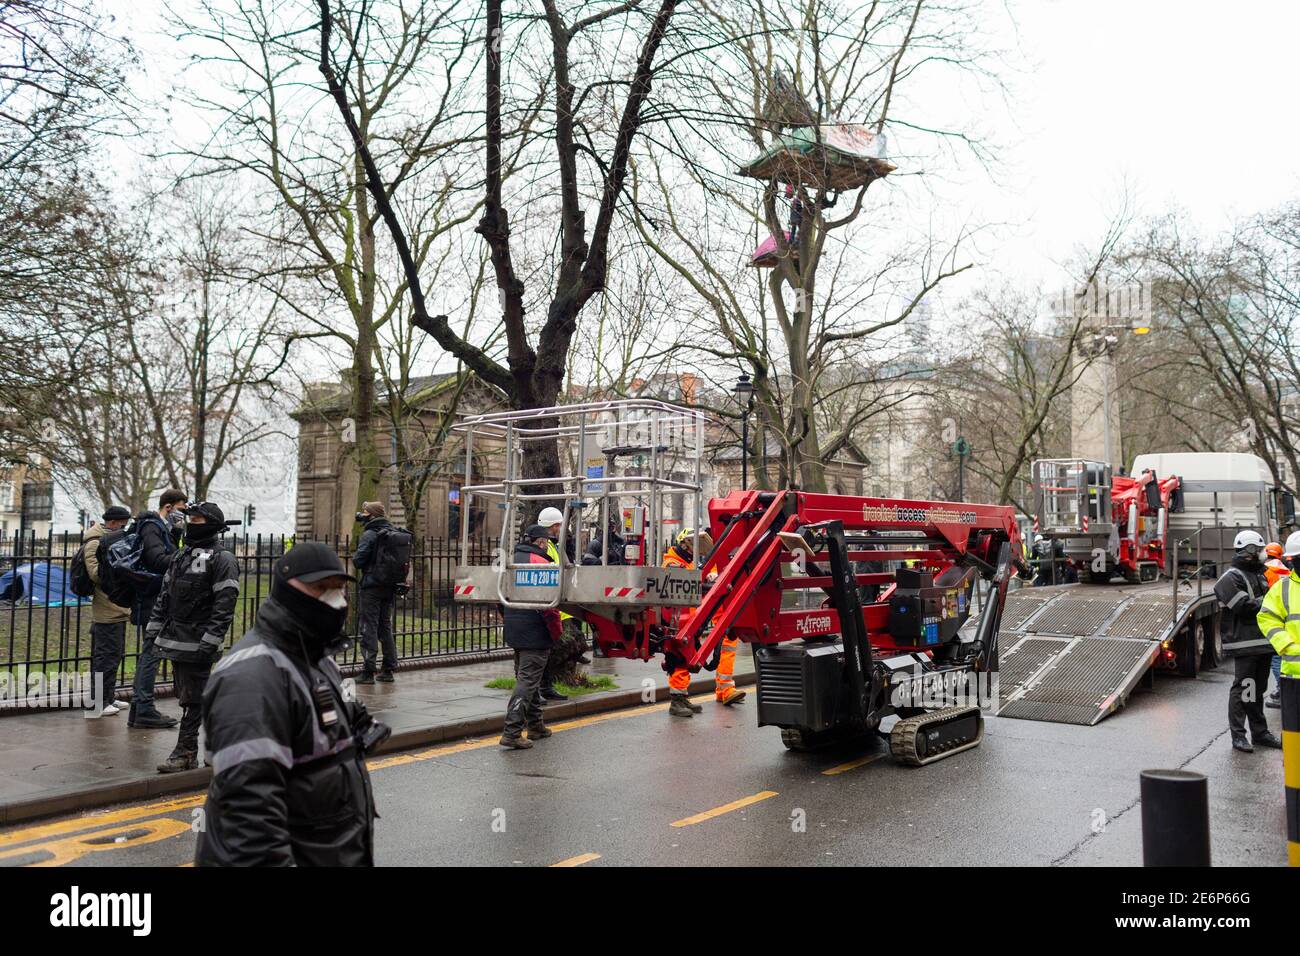 Desalojo de manifestantes de Stop HS2 del campamento en Euston Square Gardens, Londres, 27 de enero de 2021. Se están creando cerezos. Foto de stock